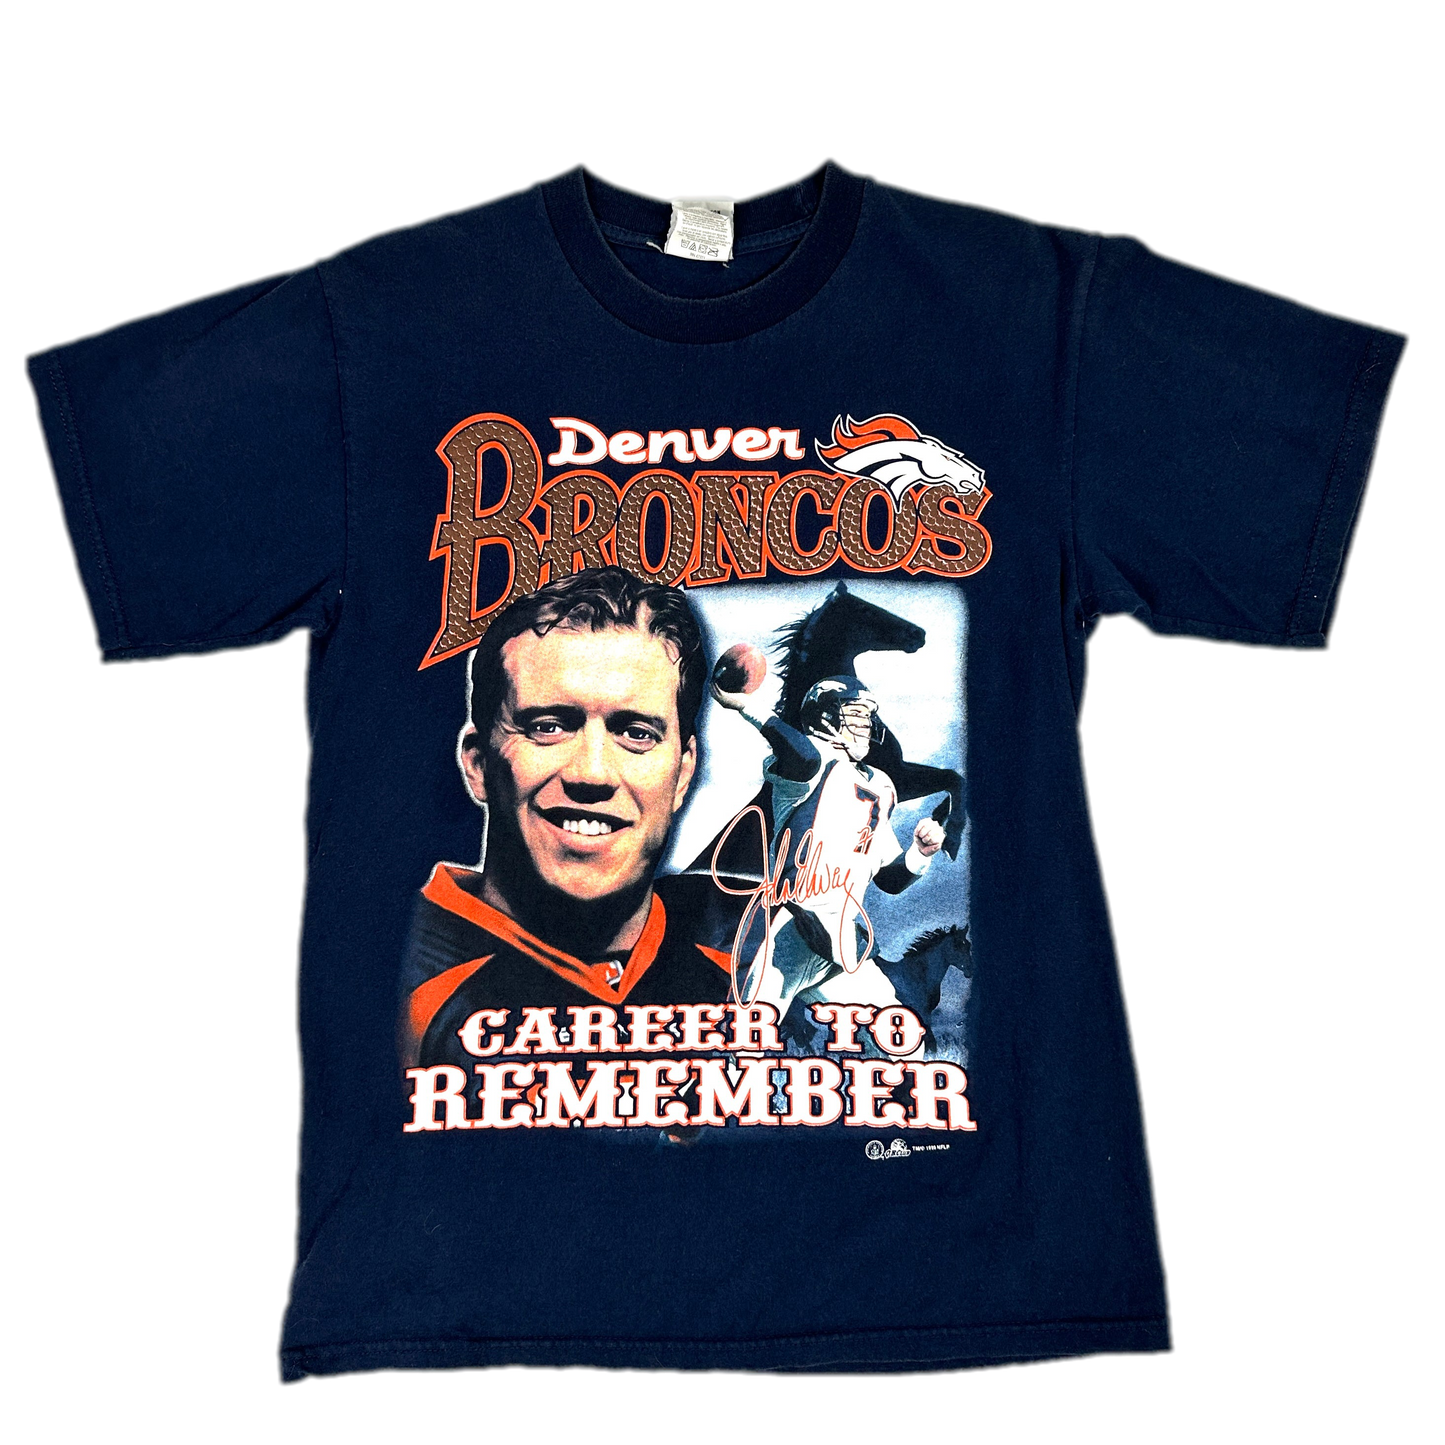 '99 Denver Broncos Sports T-shirt sz M